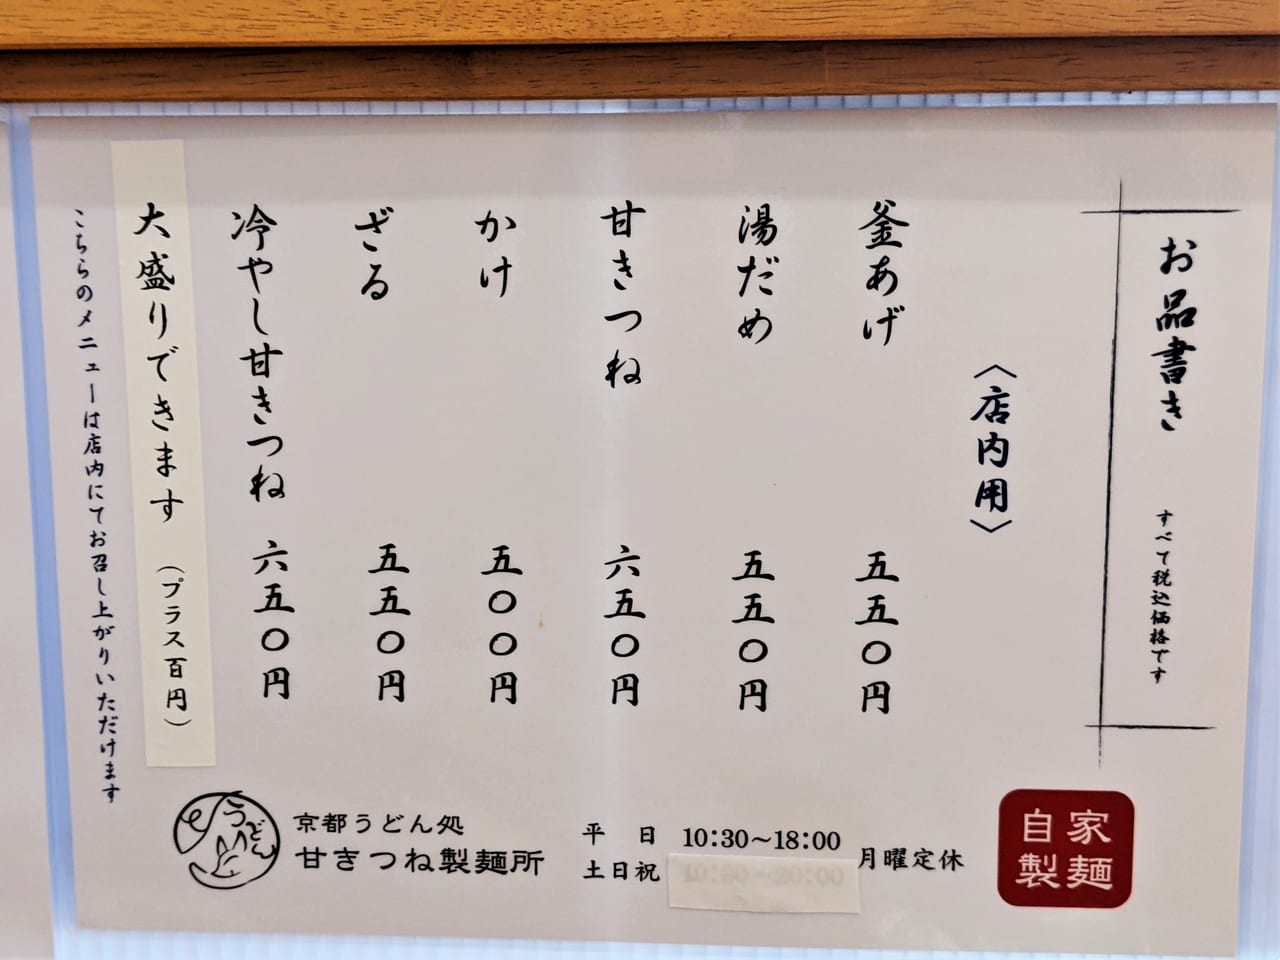 「京都うどん処甘きつね製麺所」のメニュー